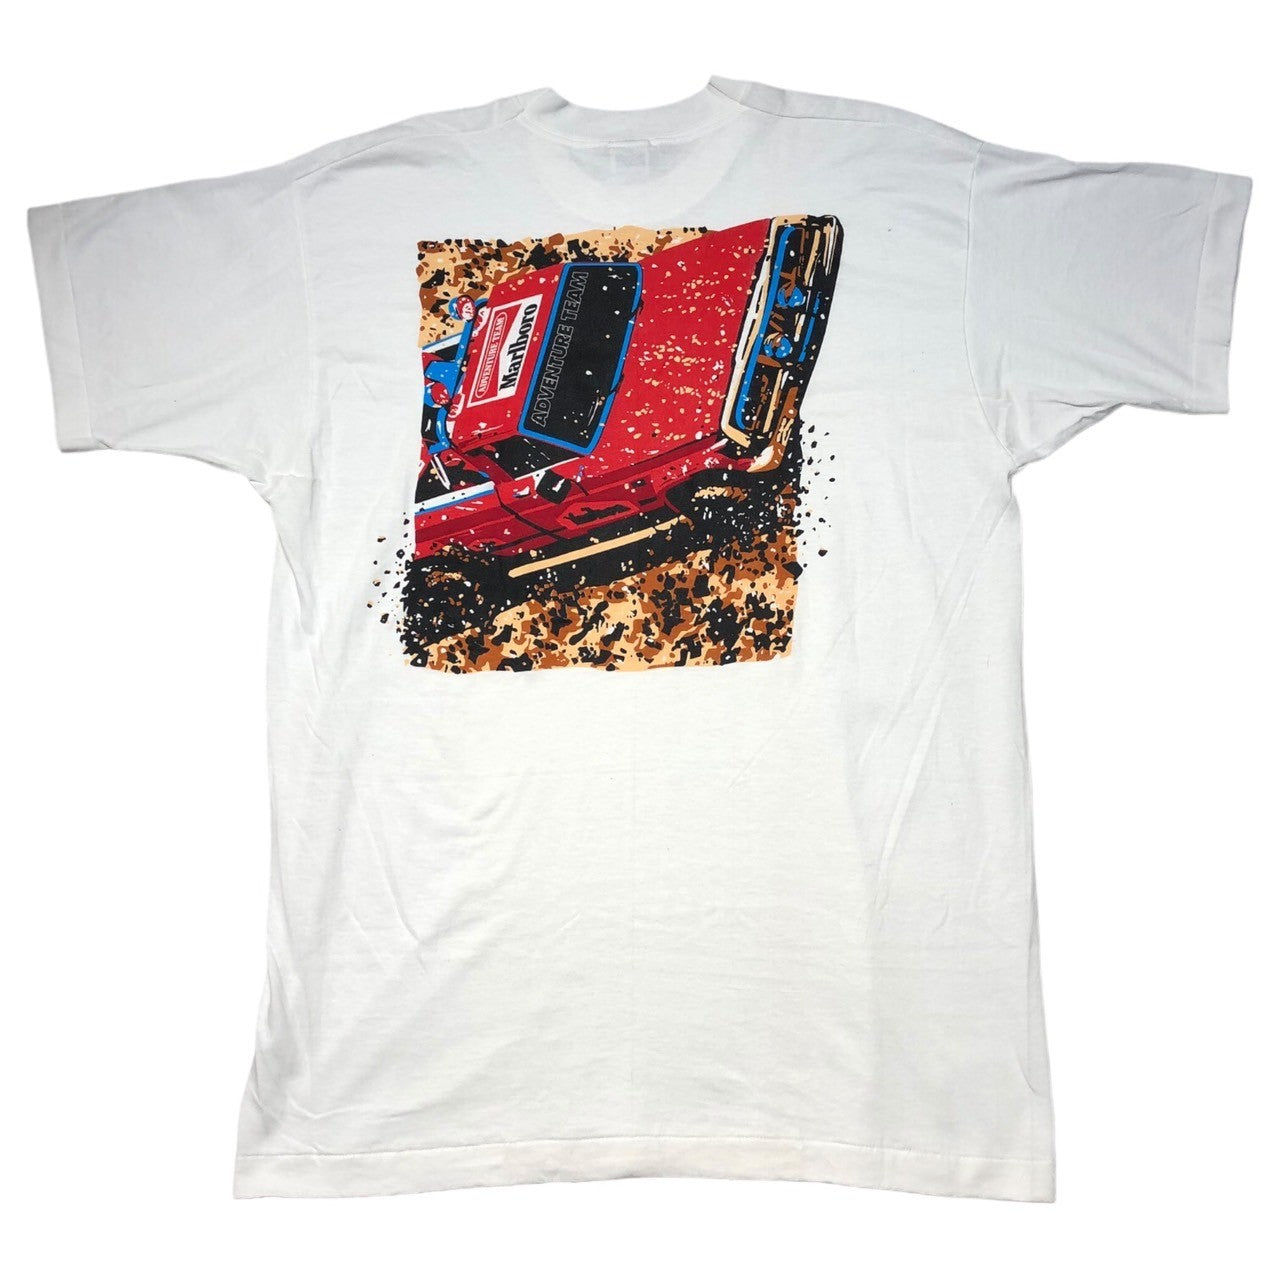 Marlboro(マールボロ) 90's ”ADVENTURE TEAM”  T-shirt アドベンチャーチーム ポケット ロゴ Tシャツ FREE ホワイト 90年代 ヴィンテージ マルボロ デッドストック